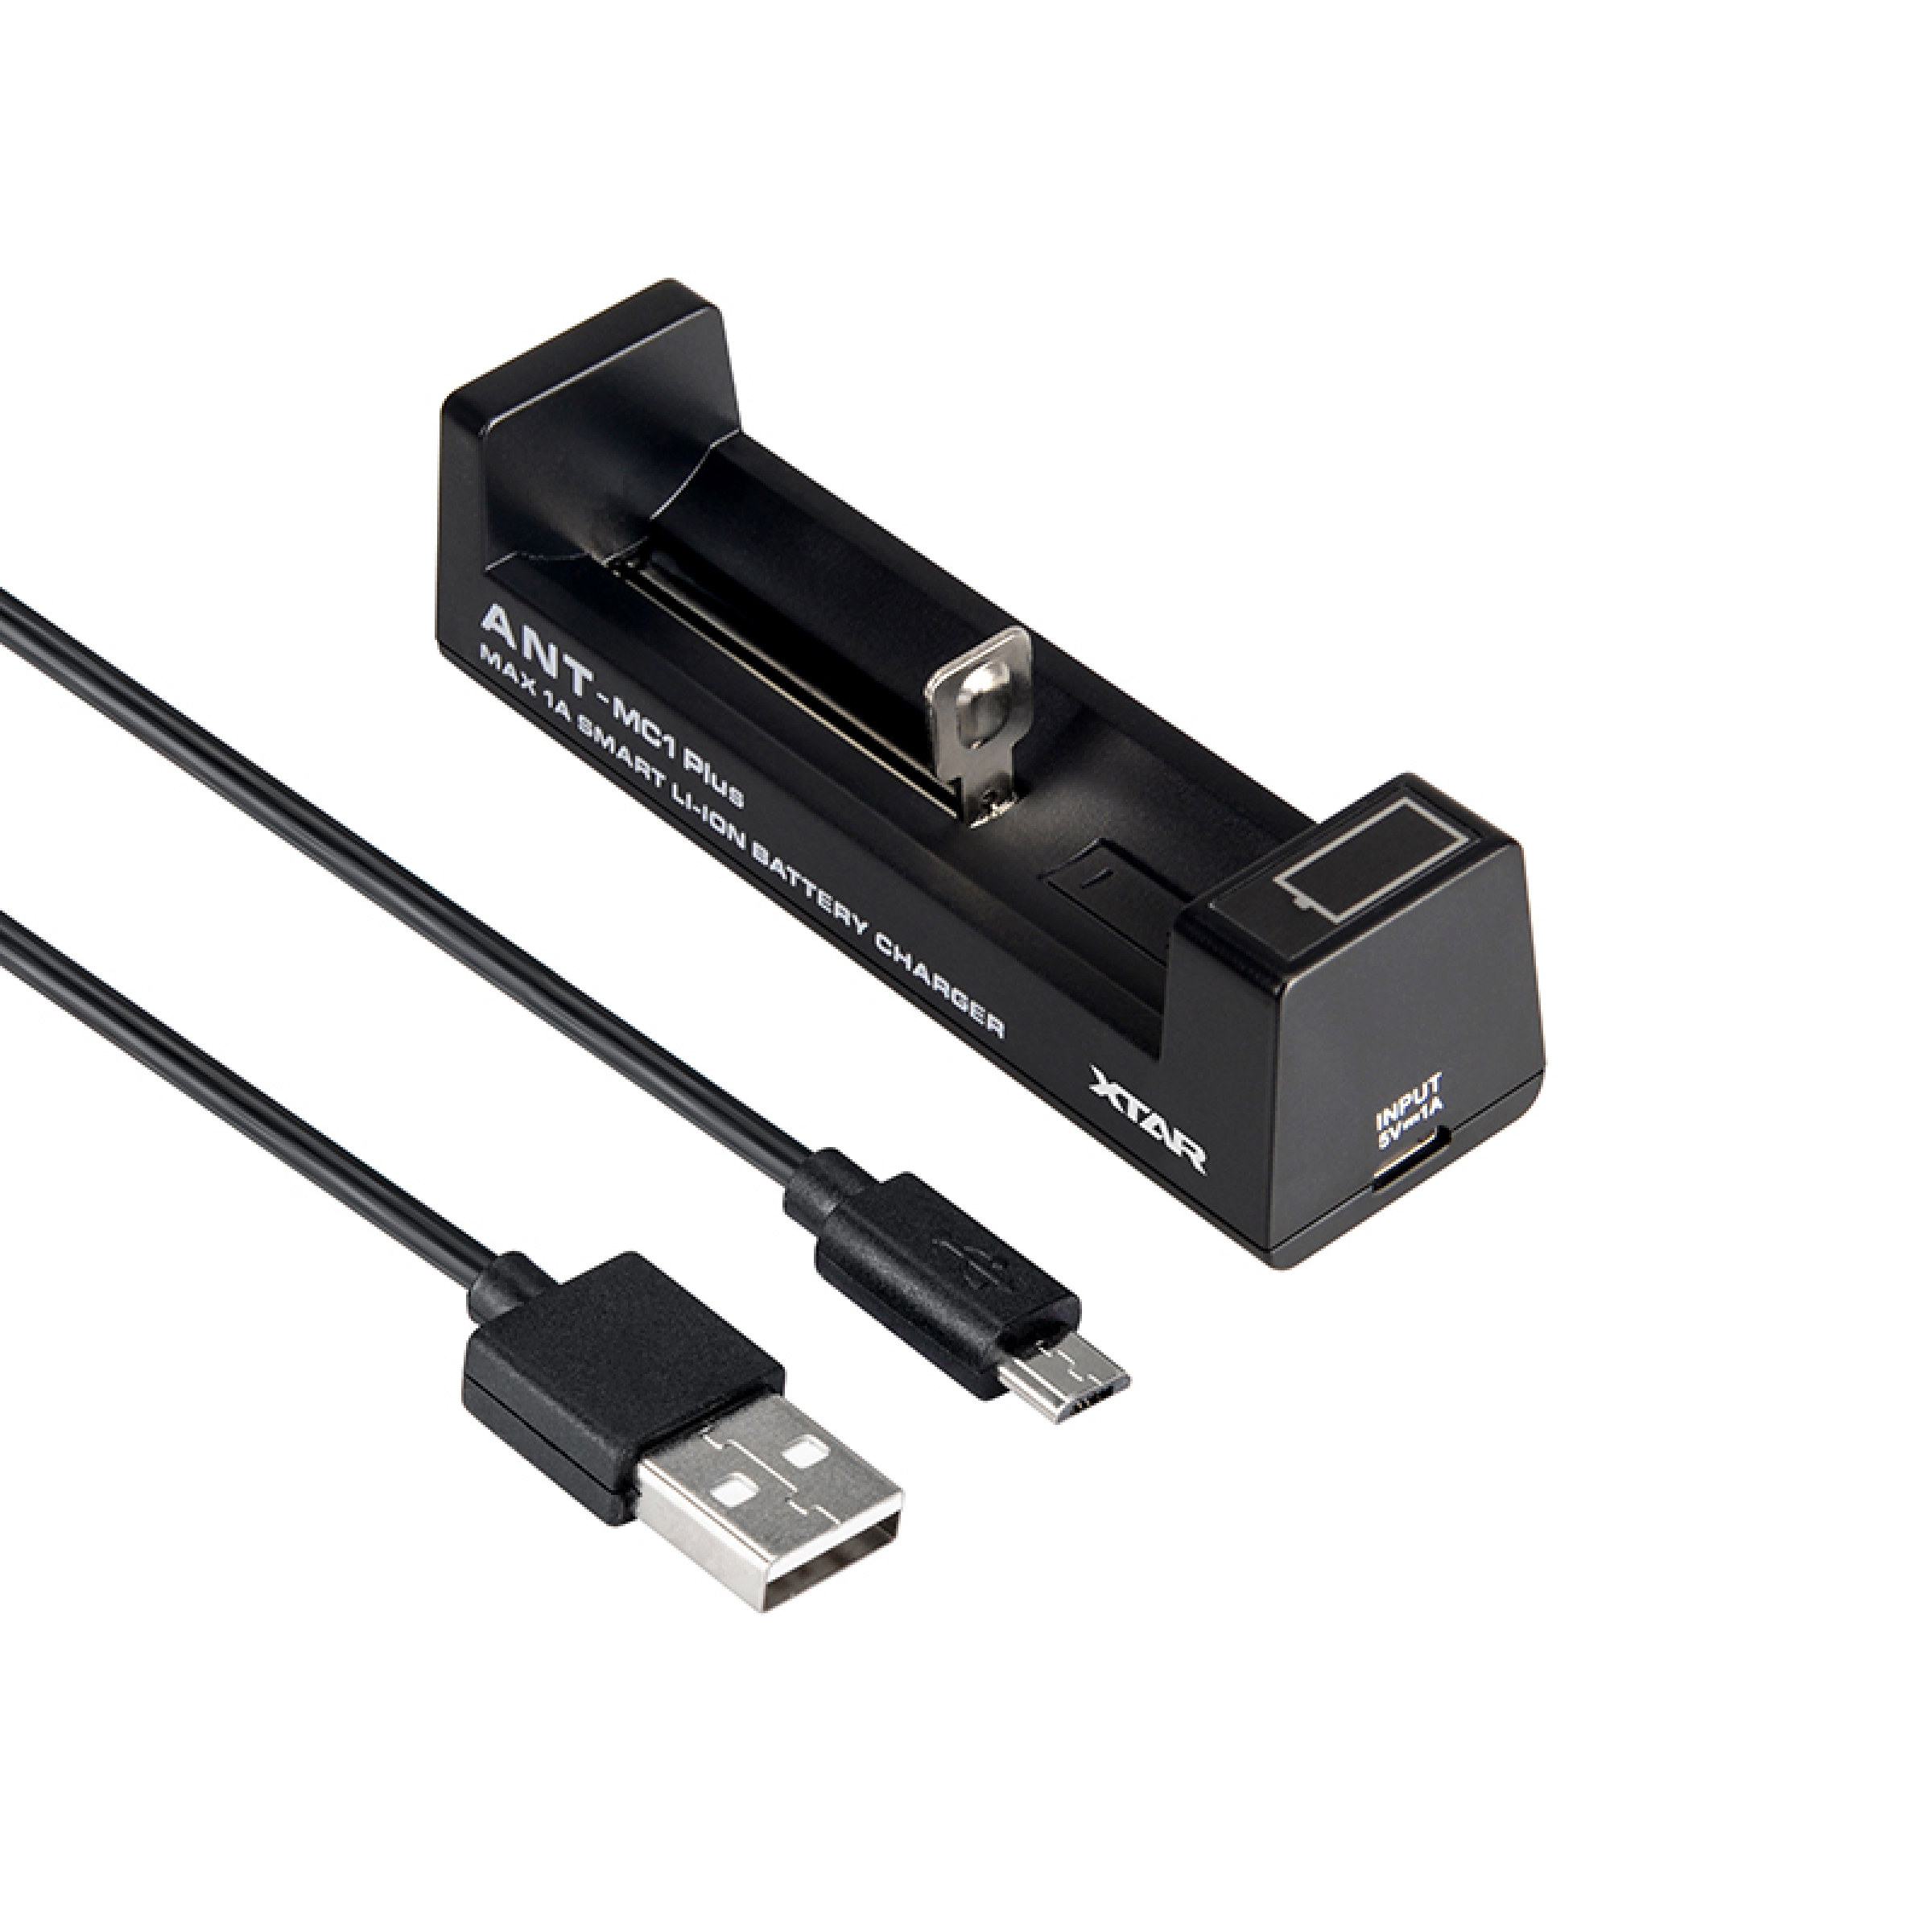 Xtar Charger Ladegerät MC1 18650 Basic mit USB Ladekabel